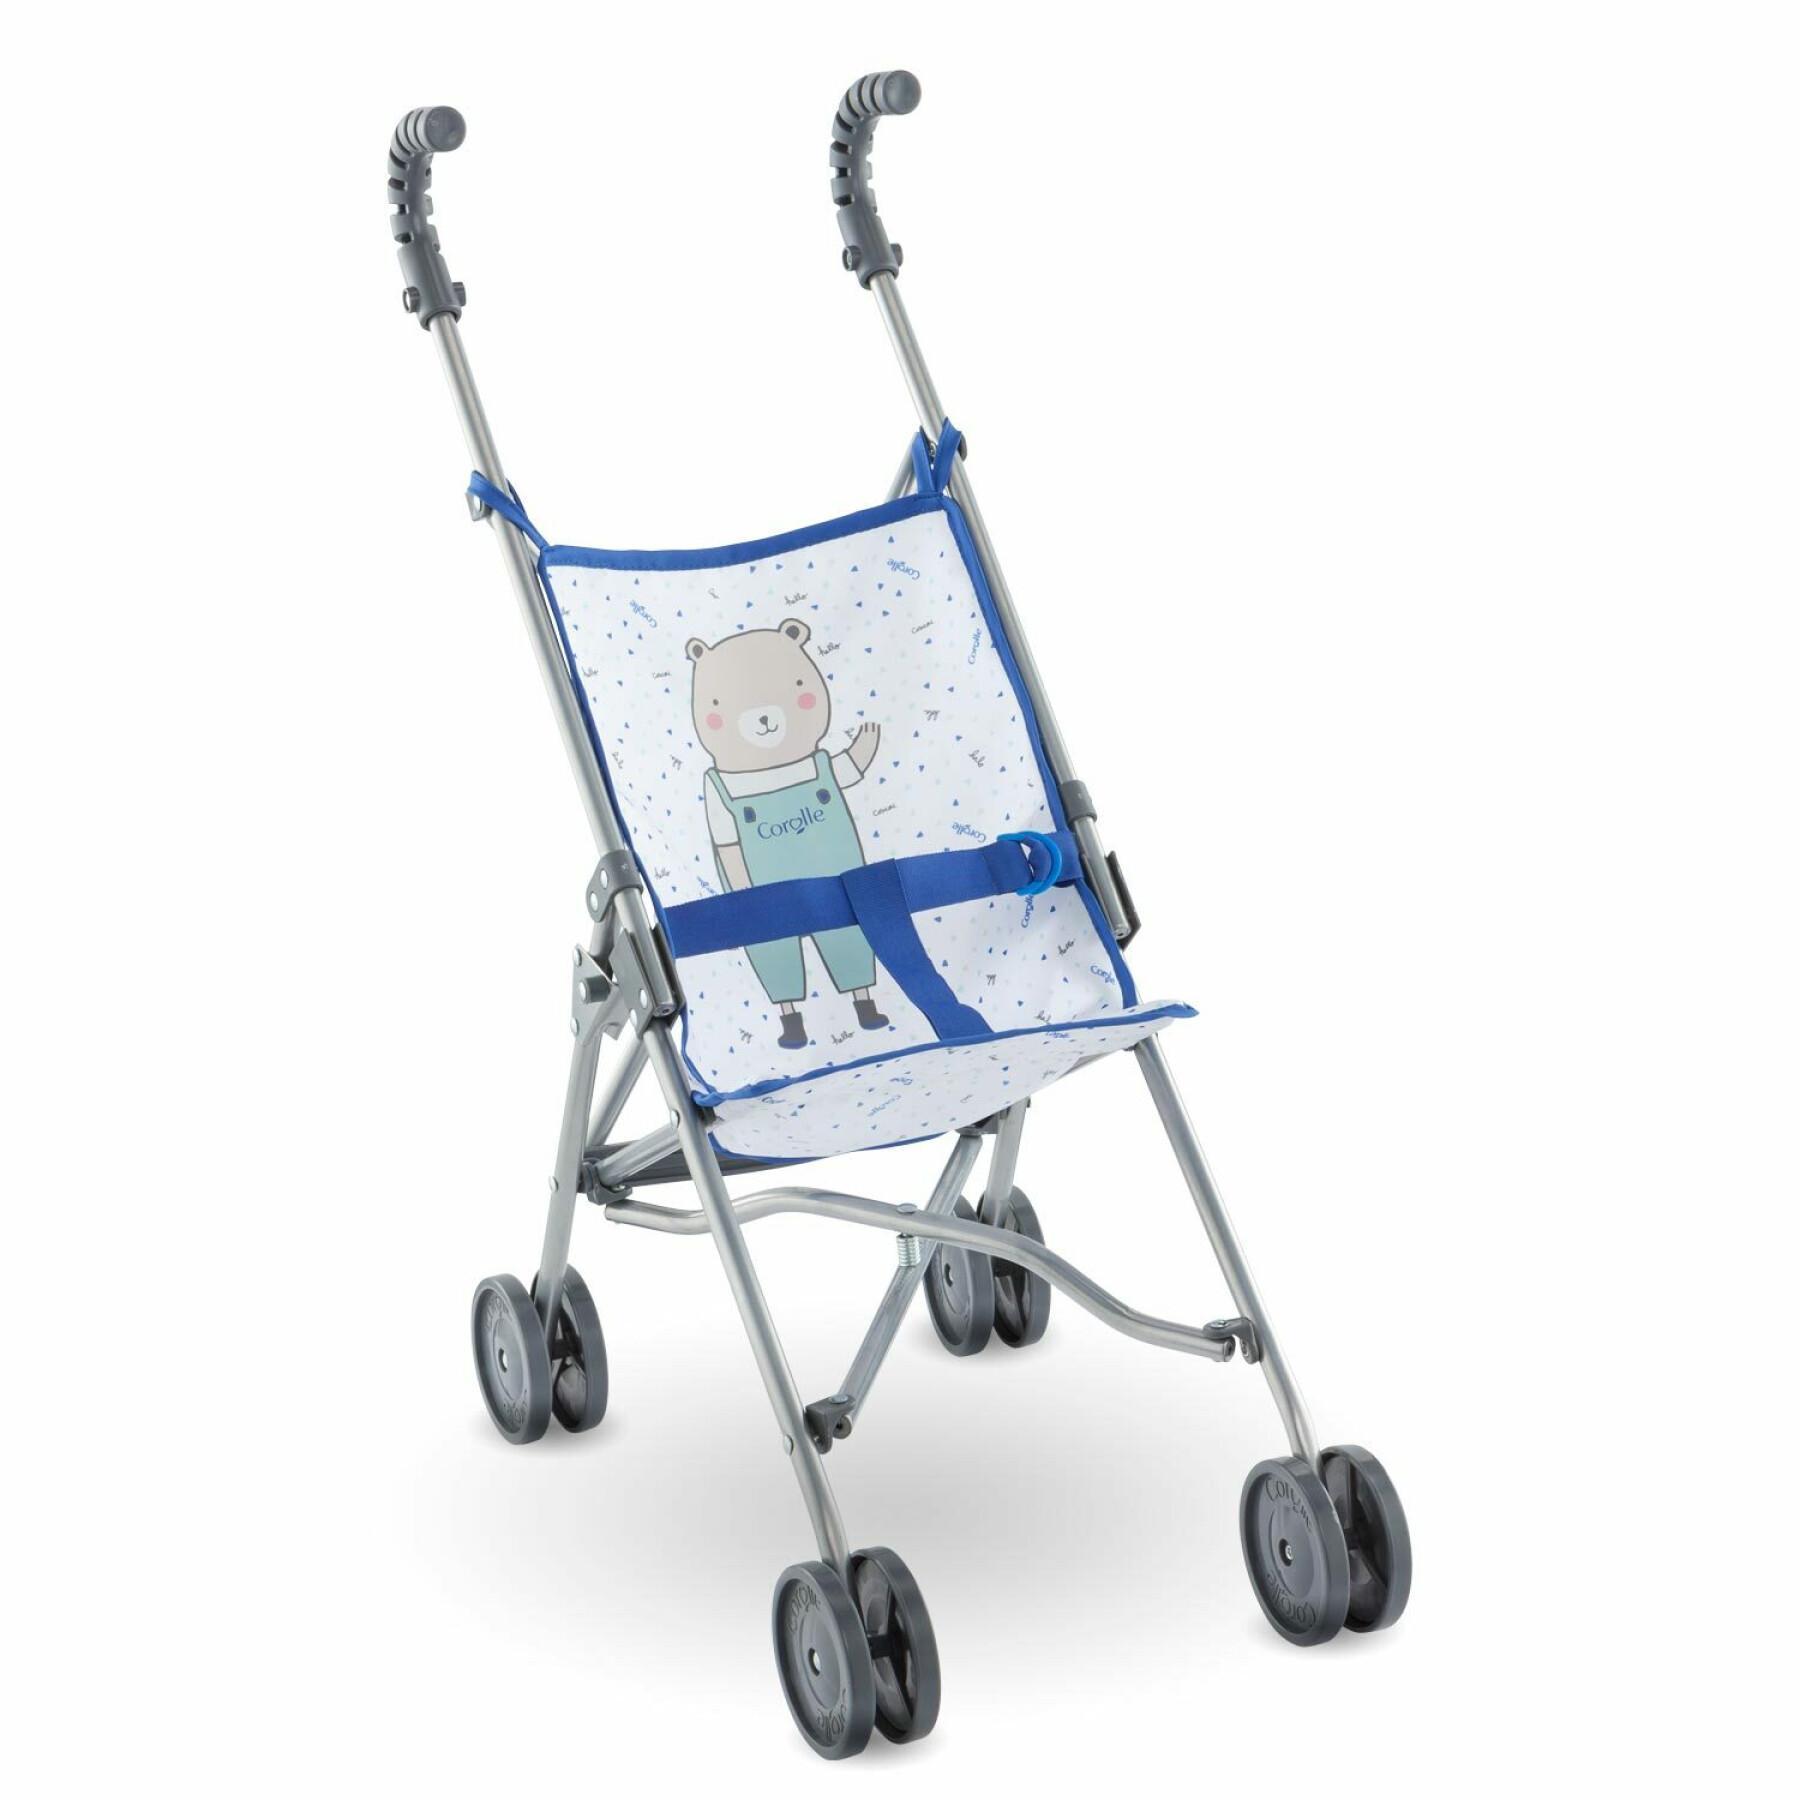 Niebieski wózek dla dziecka Corolle